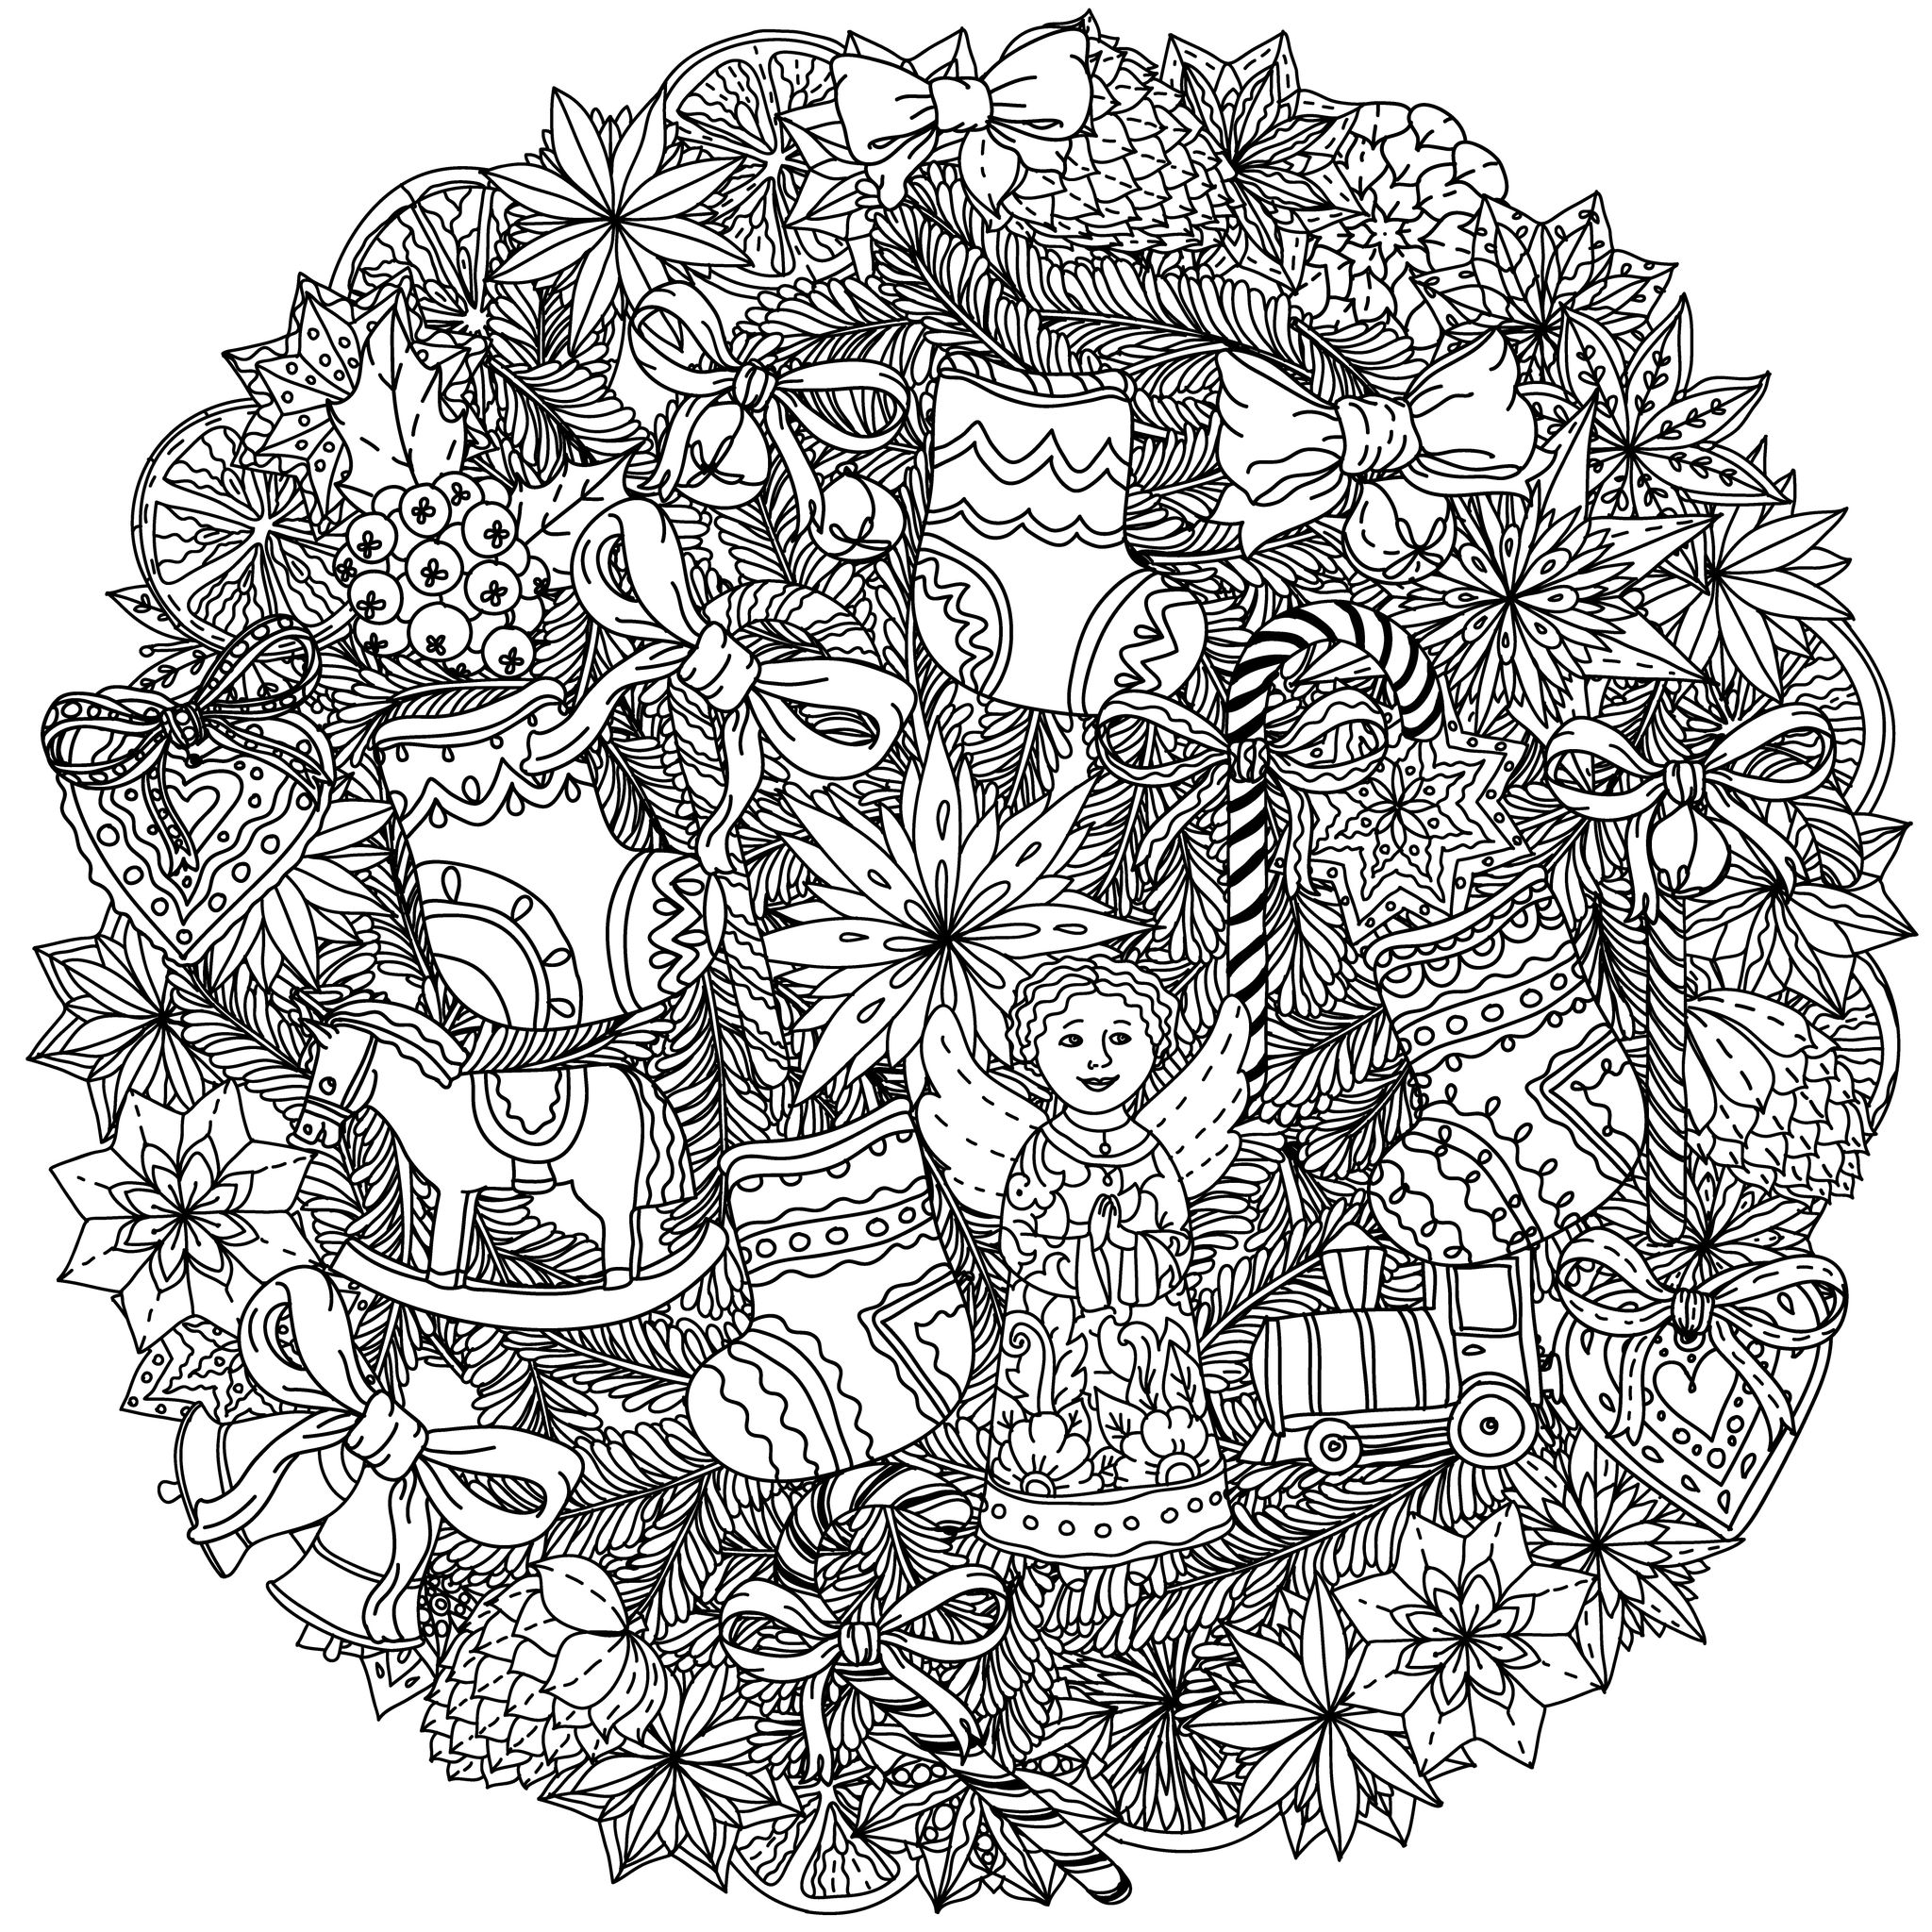 Une couronne de Noël (ou un Mandala ?) ... A colorier sans plus tarder, très complexe !, Artiste : Mashabr   Source : 123rf